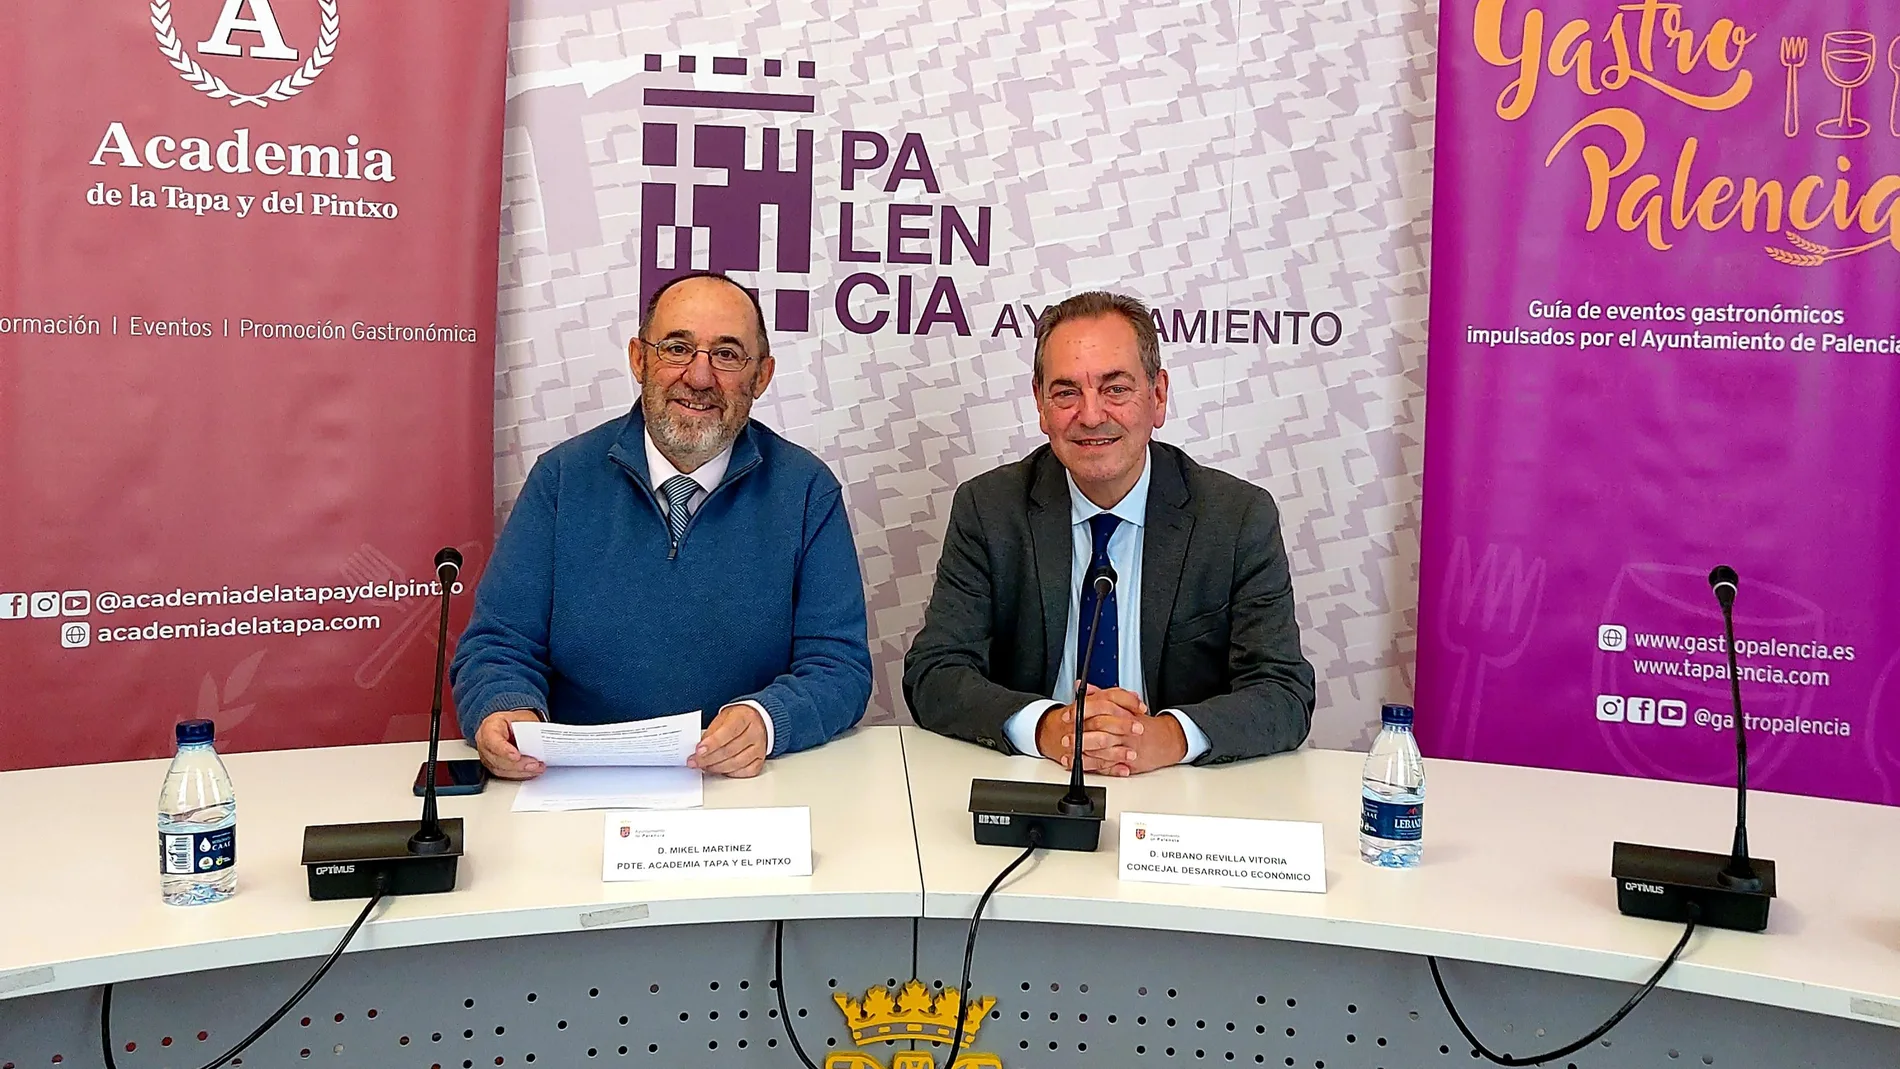 Urbano Revilla, concejal de desarrollo económico , presenta la iniciativa junto a Mikel Martínez presidente de la Academia de la Tapa y del Pintxo.